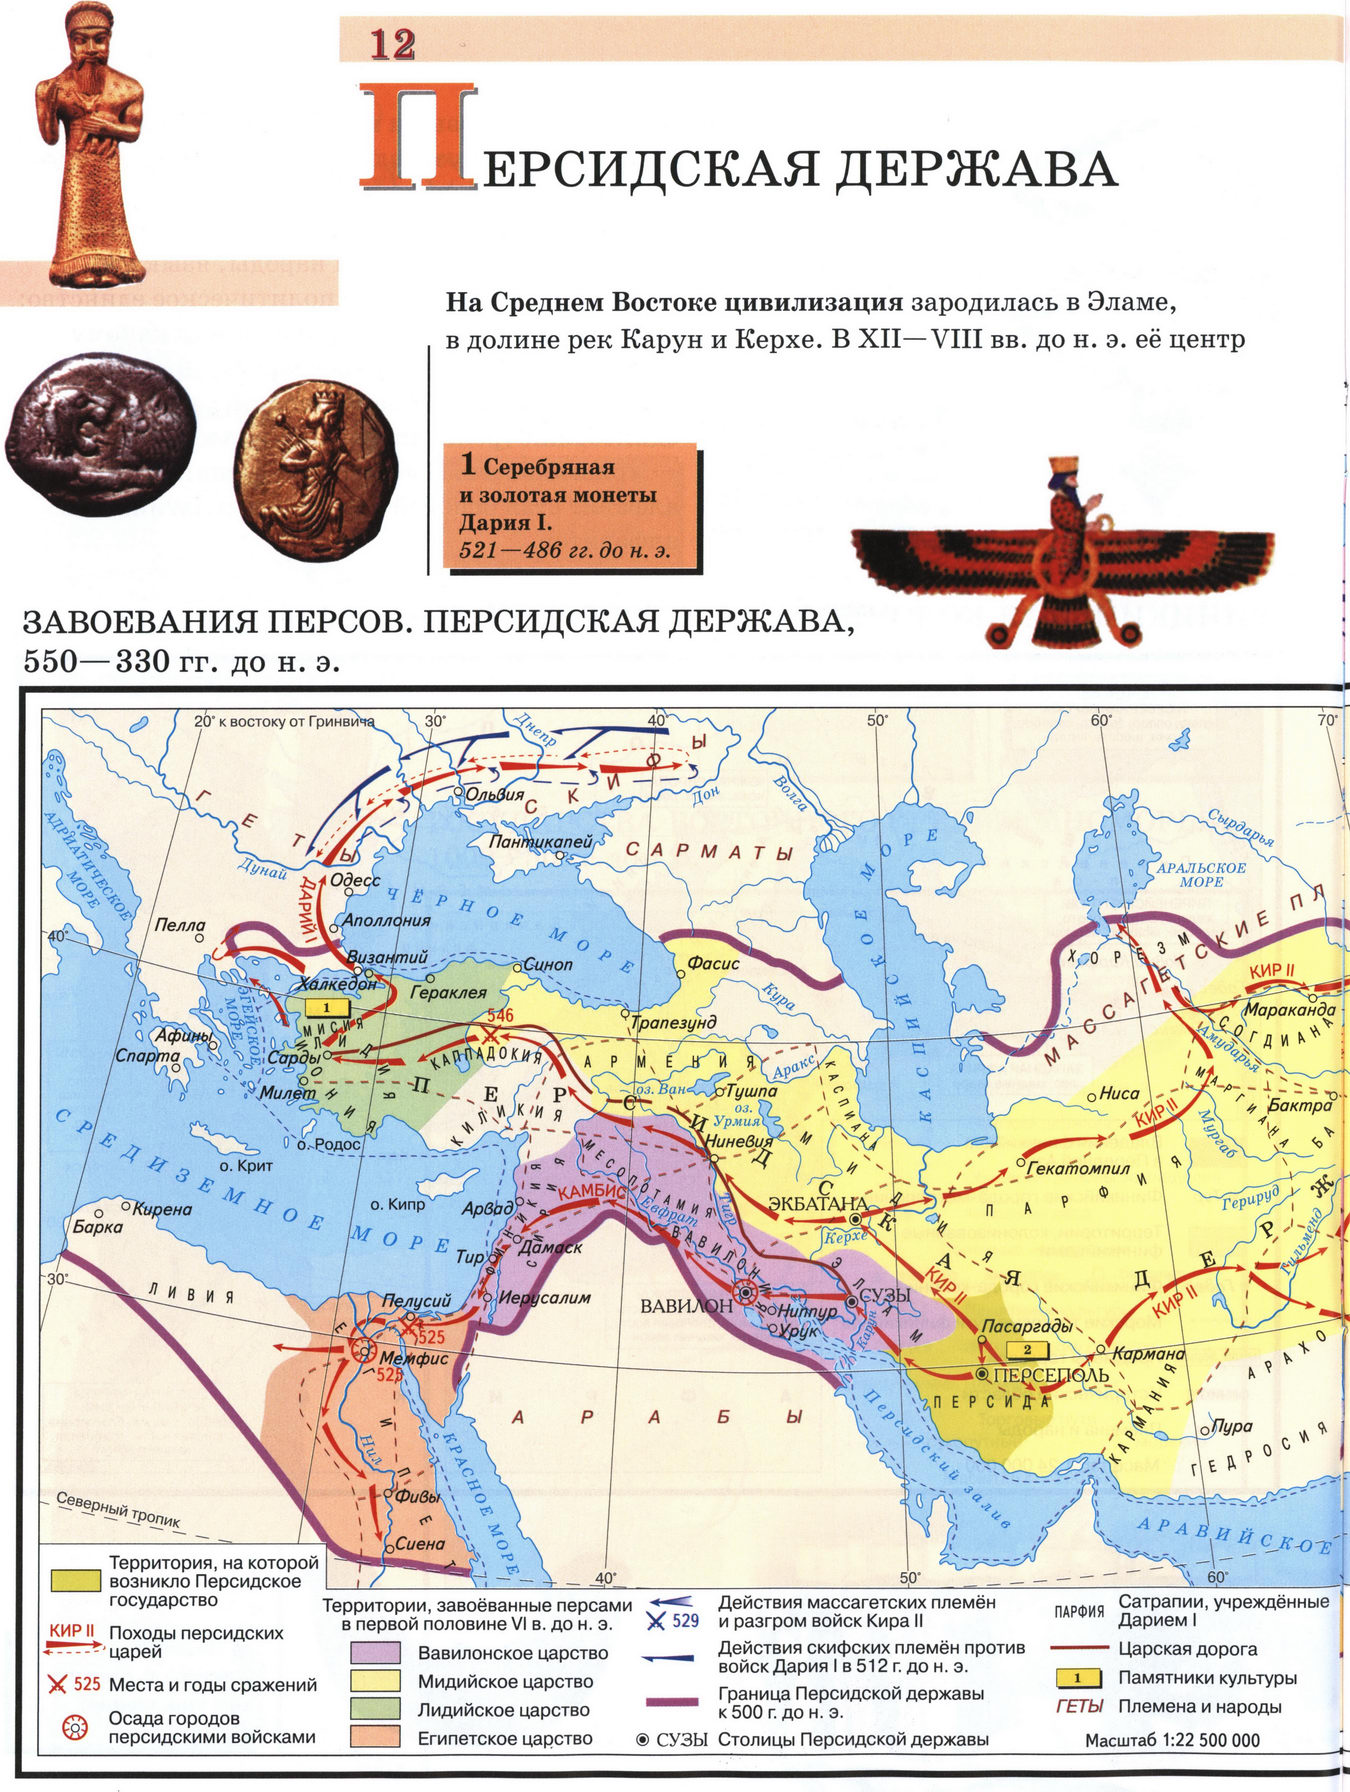 Гдз по истории 5 класс контурная карта курбский история древнего мира